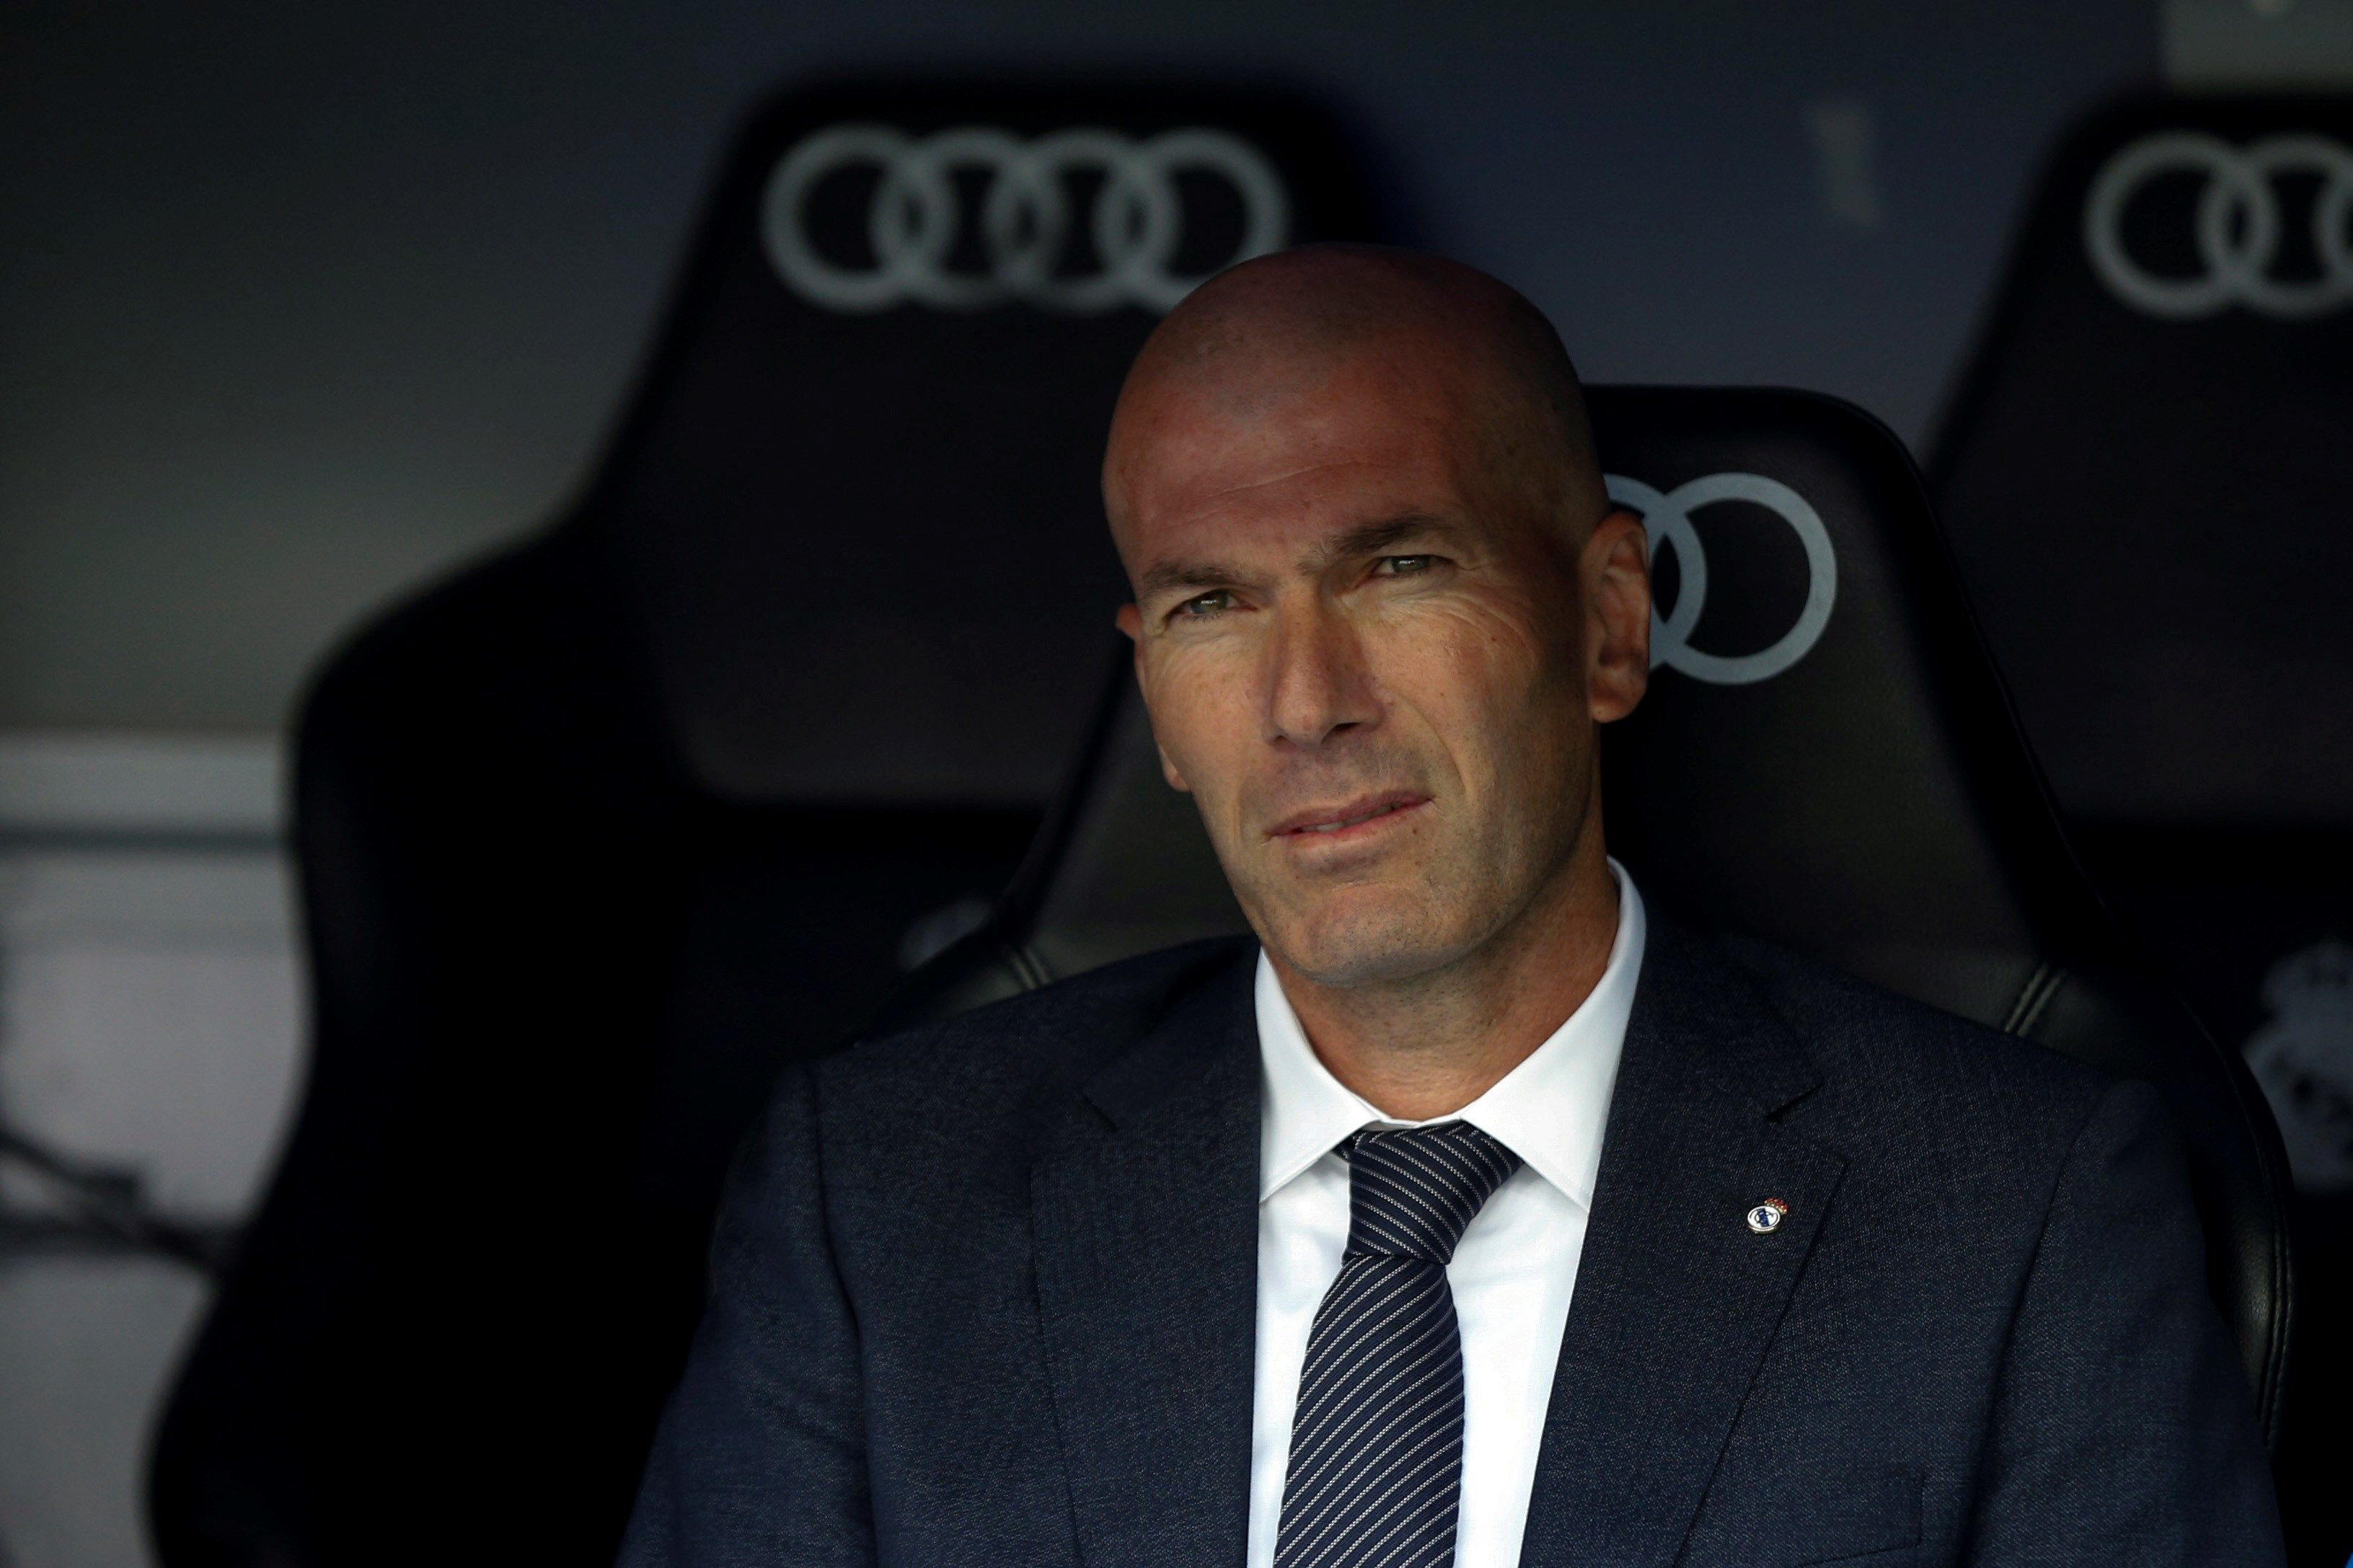 El francés Zinedine Zidane,  entrenador del Real Madrid, se retiró de la concentración de su club. (Foto Prensa Libre: EFE)